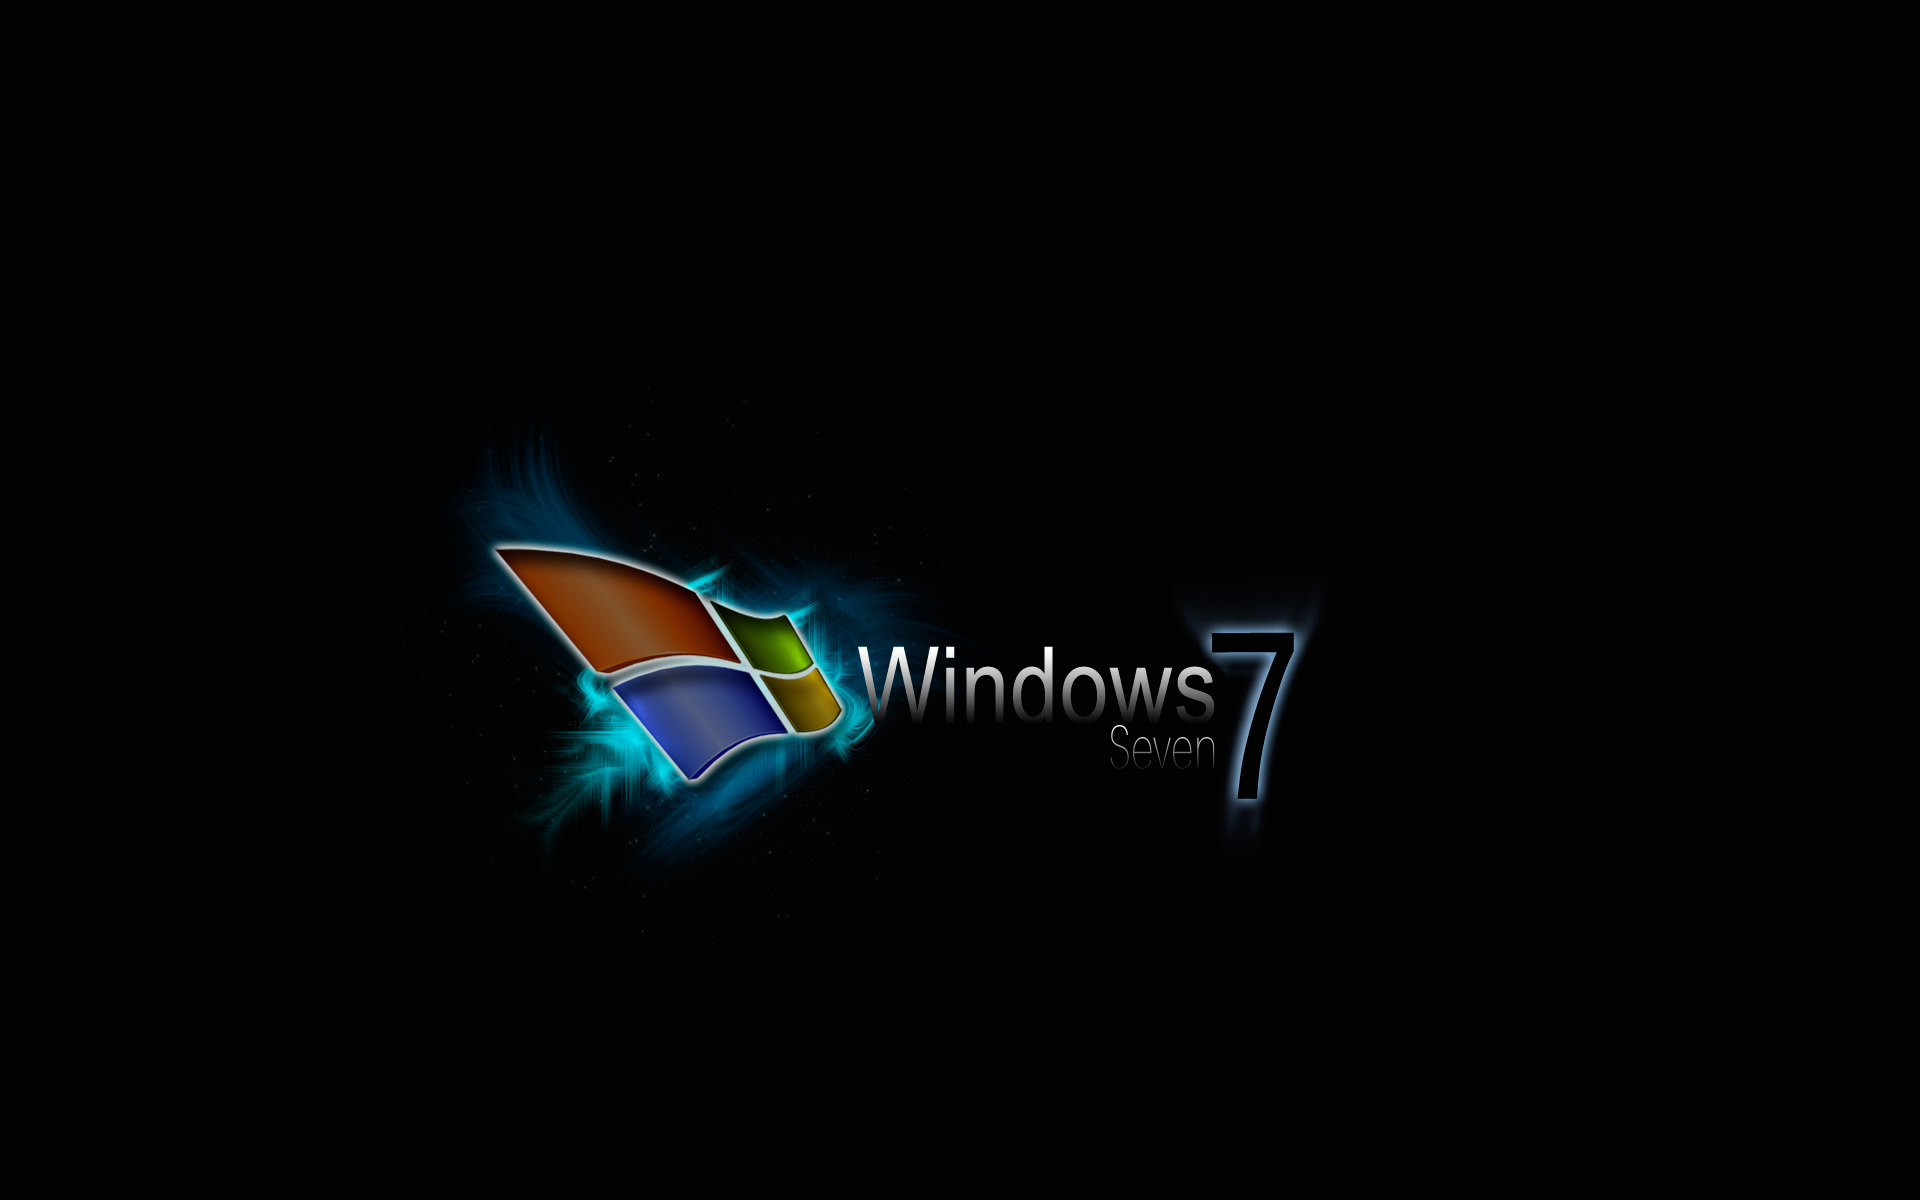 Wallpaper For Microsoft Windows 6u66e1l Jpg Picserio